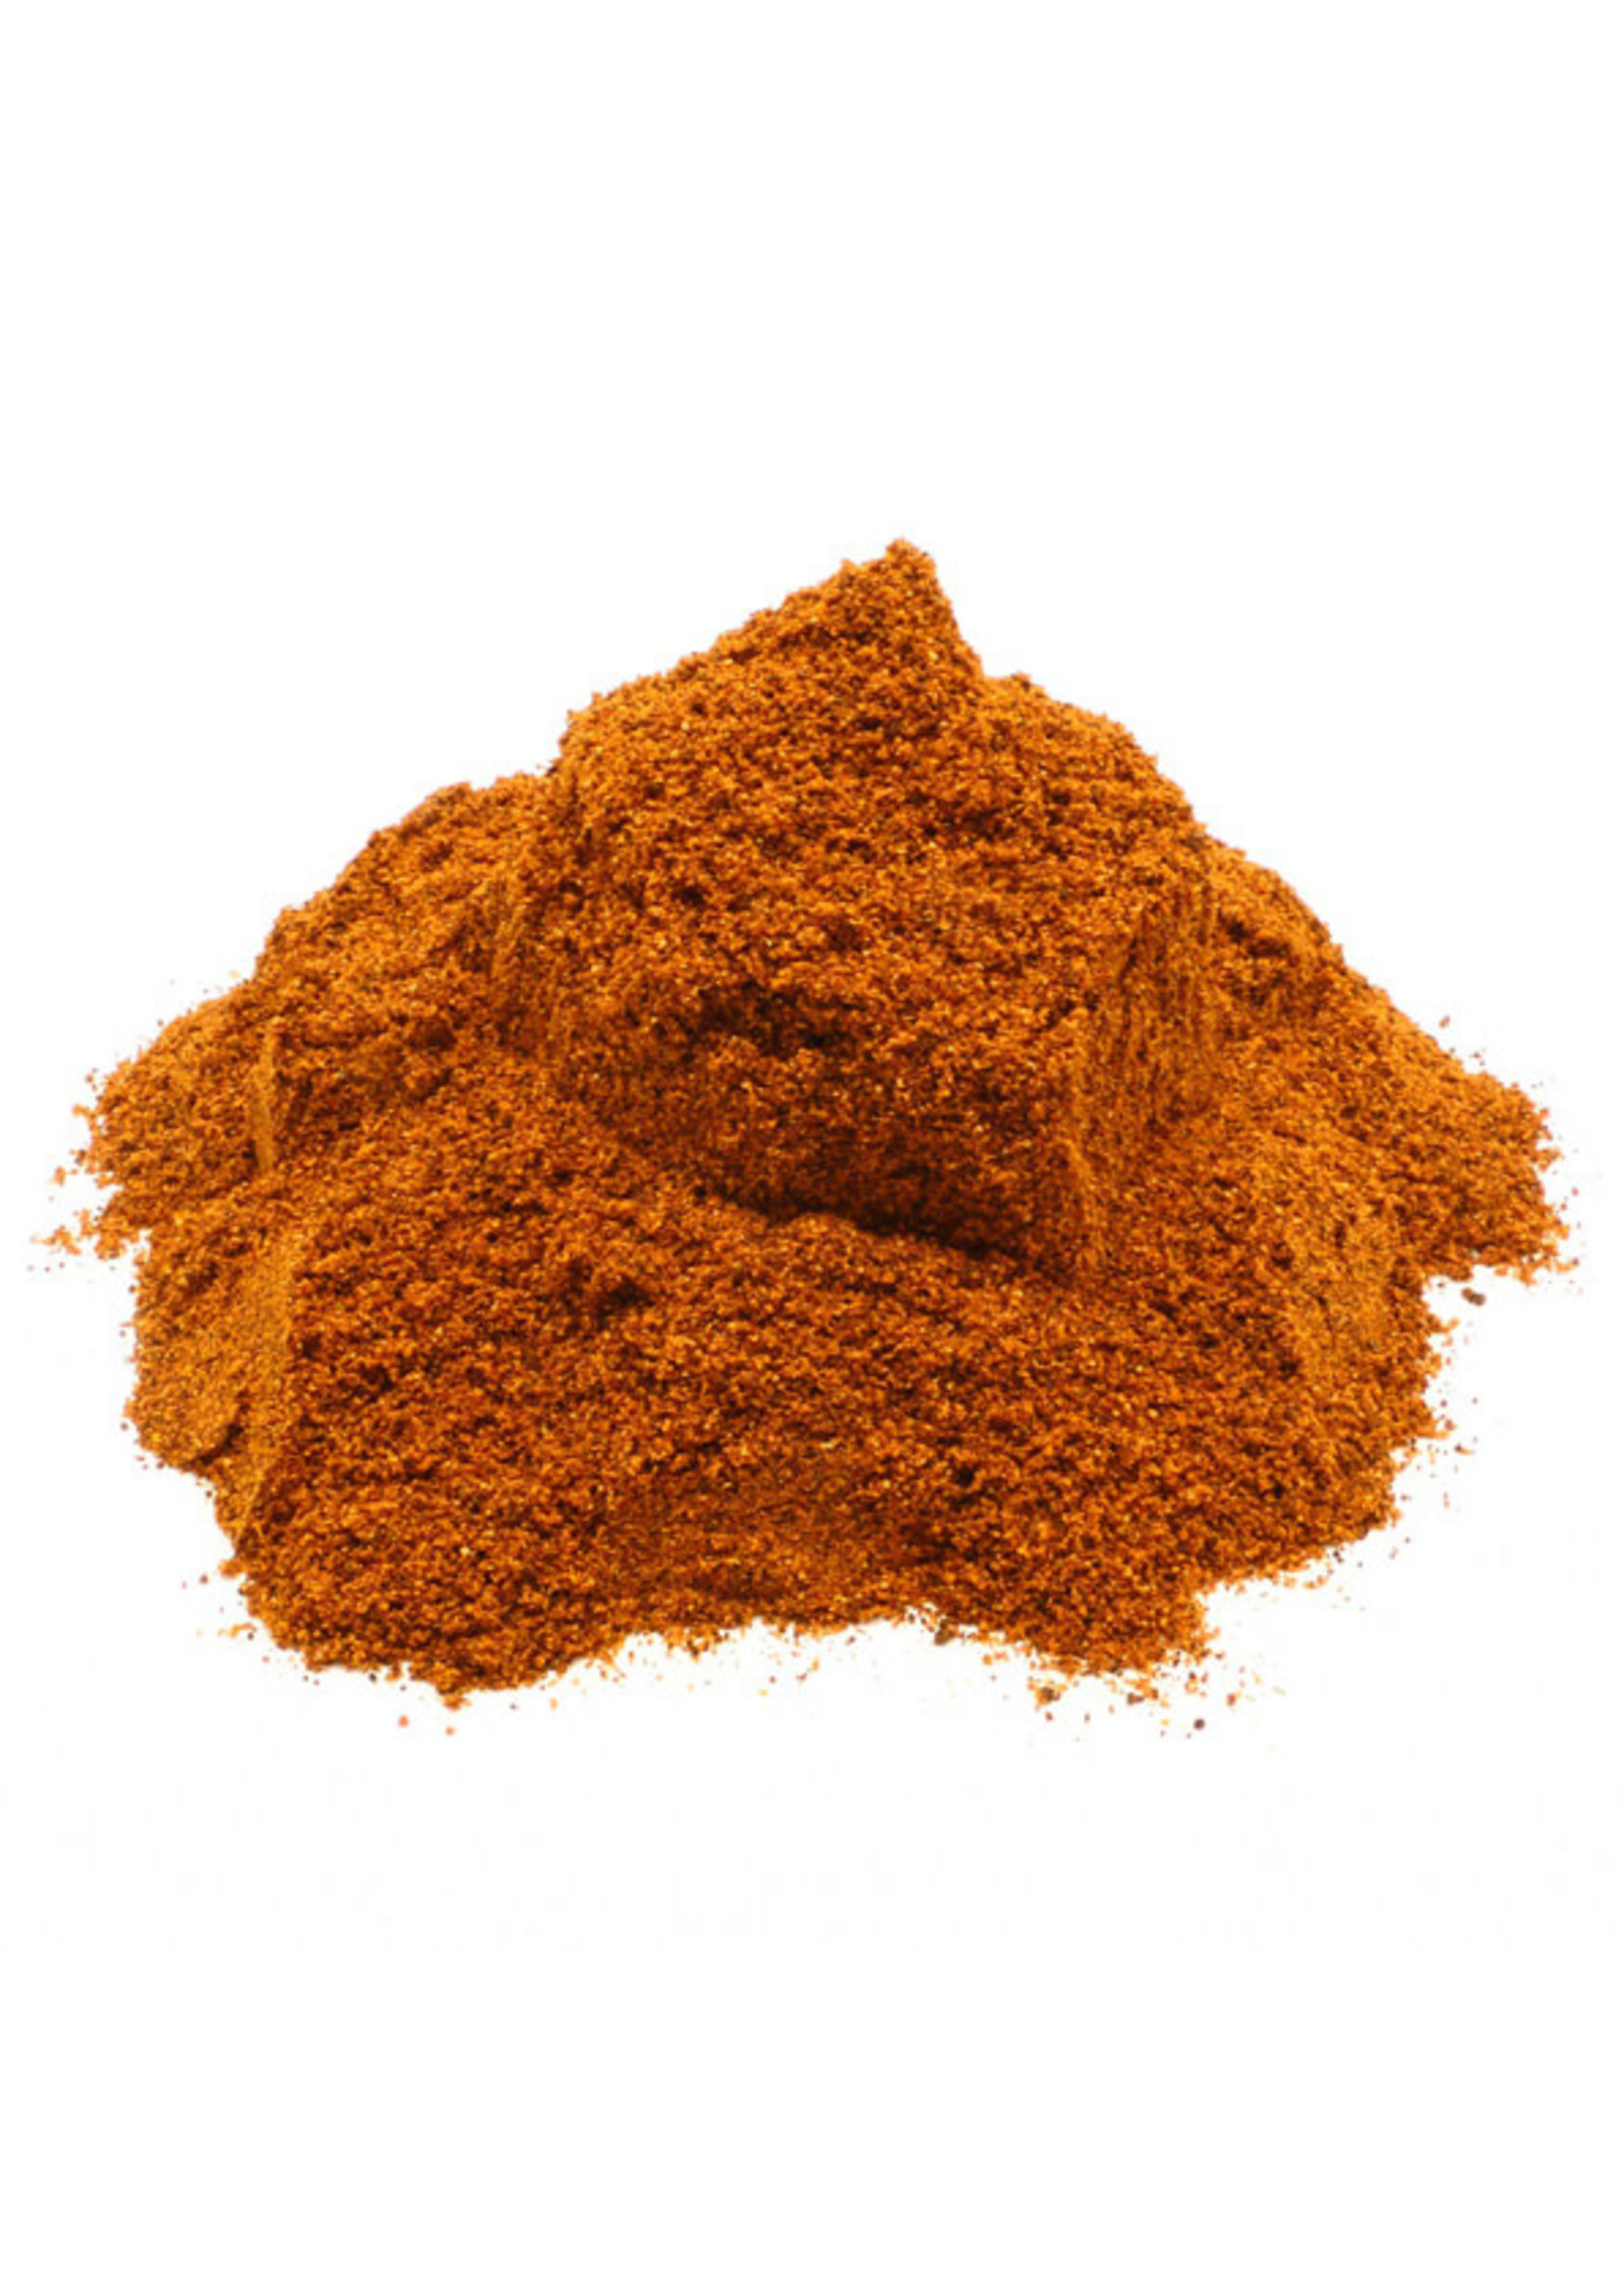 Chipotle Chili powder